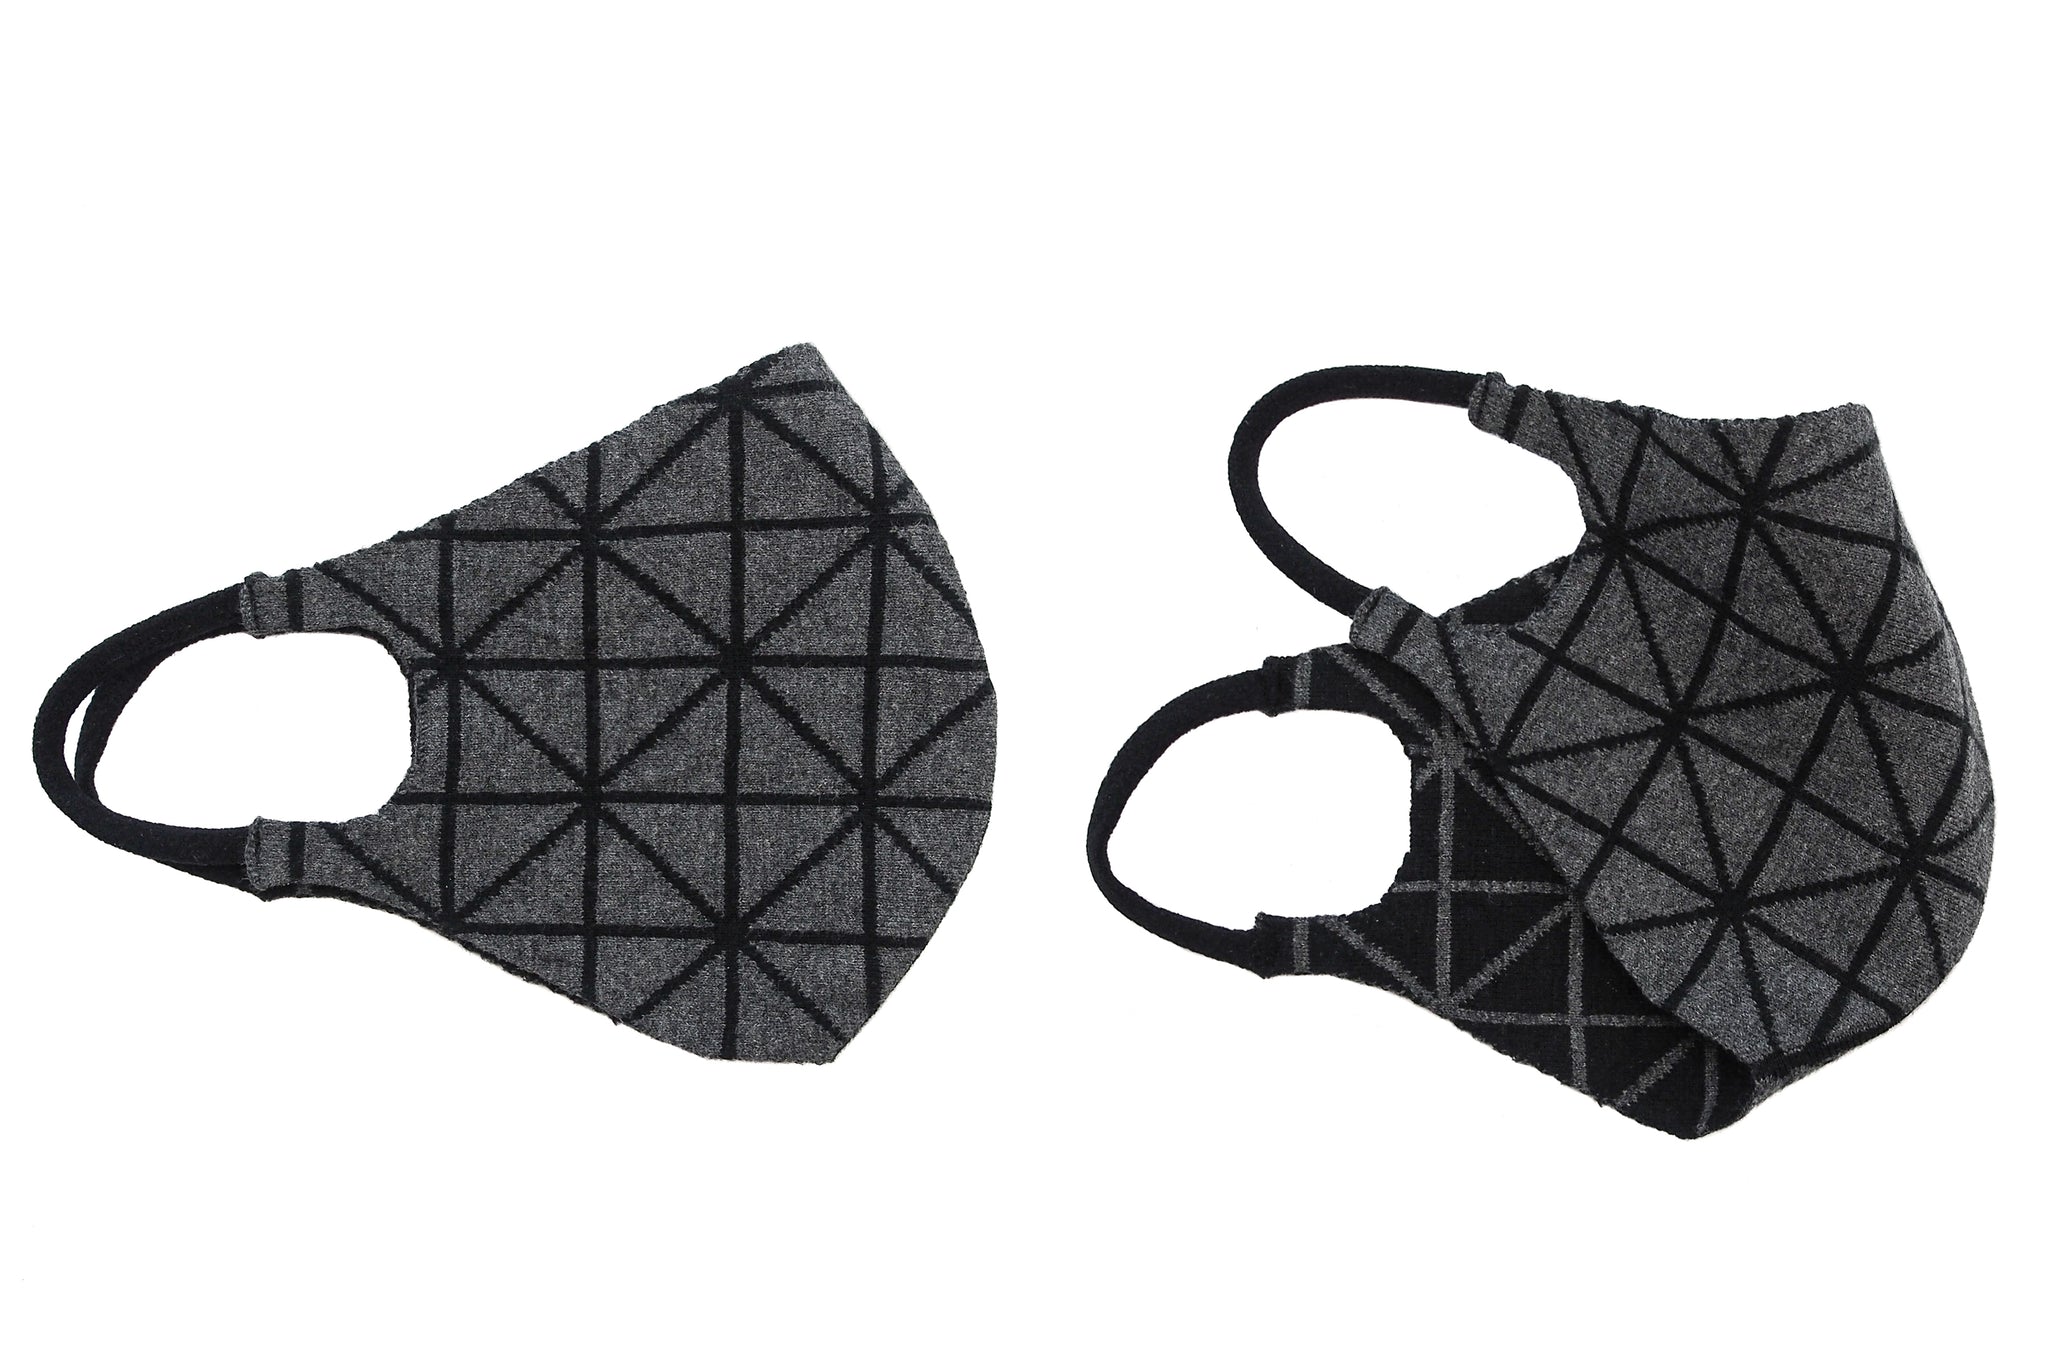 Geometric Reversible Jacquard Knit Mask (3 Pack Bundle)